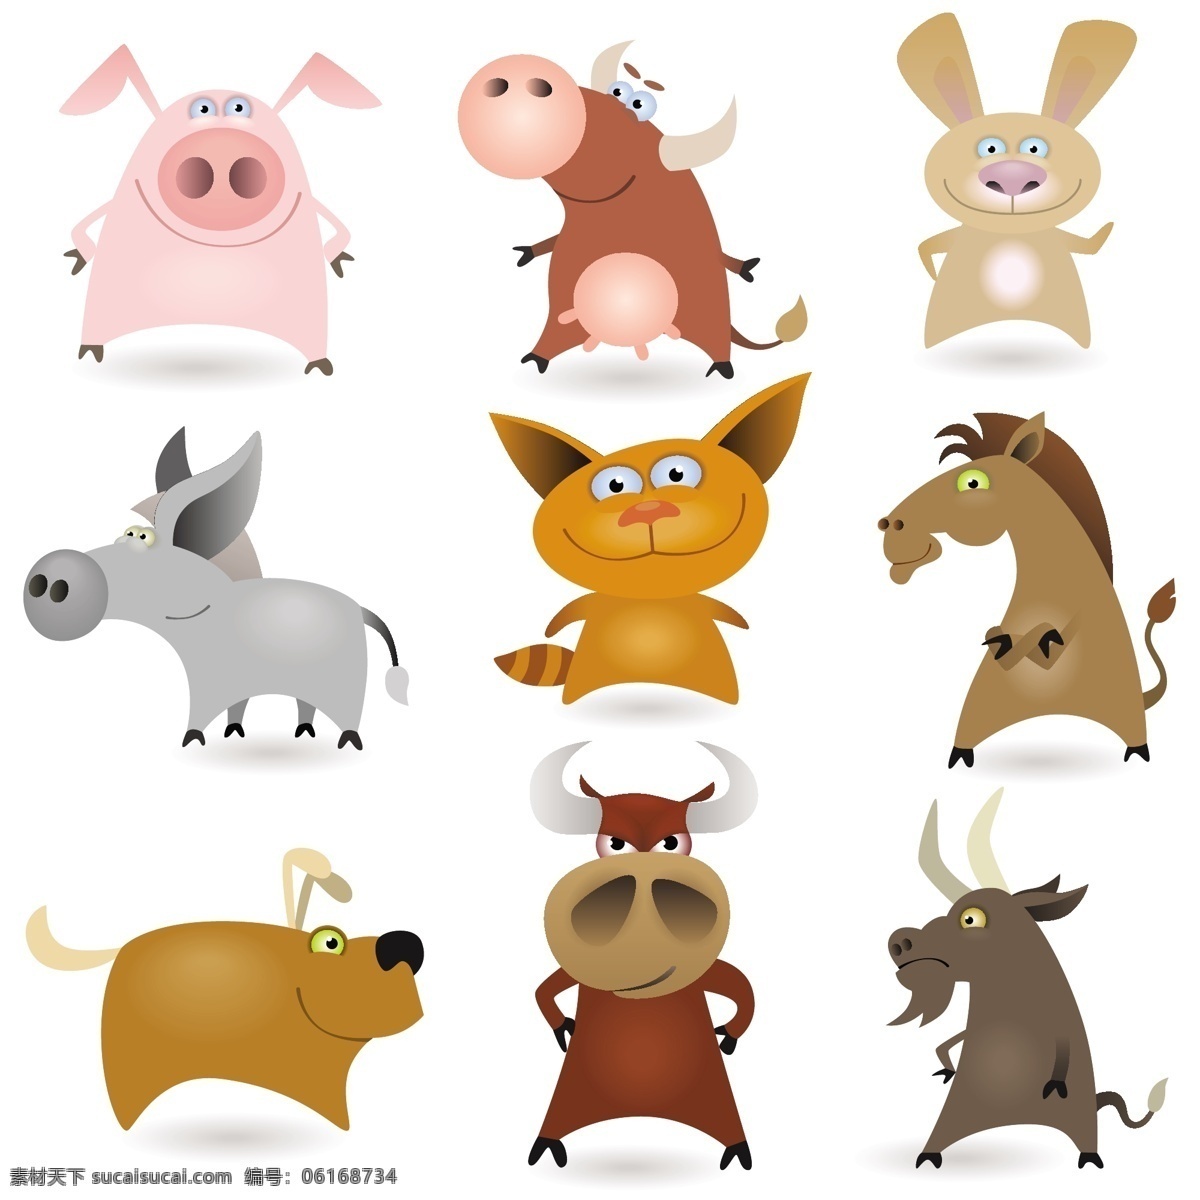 卡通可爱动物 卡通 动物 可爱 卡通生物 马 牛 猪 羊 狗 猫 陆地动物 生物世界 矢量素材 白色